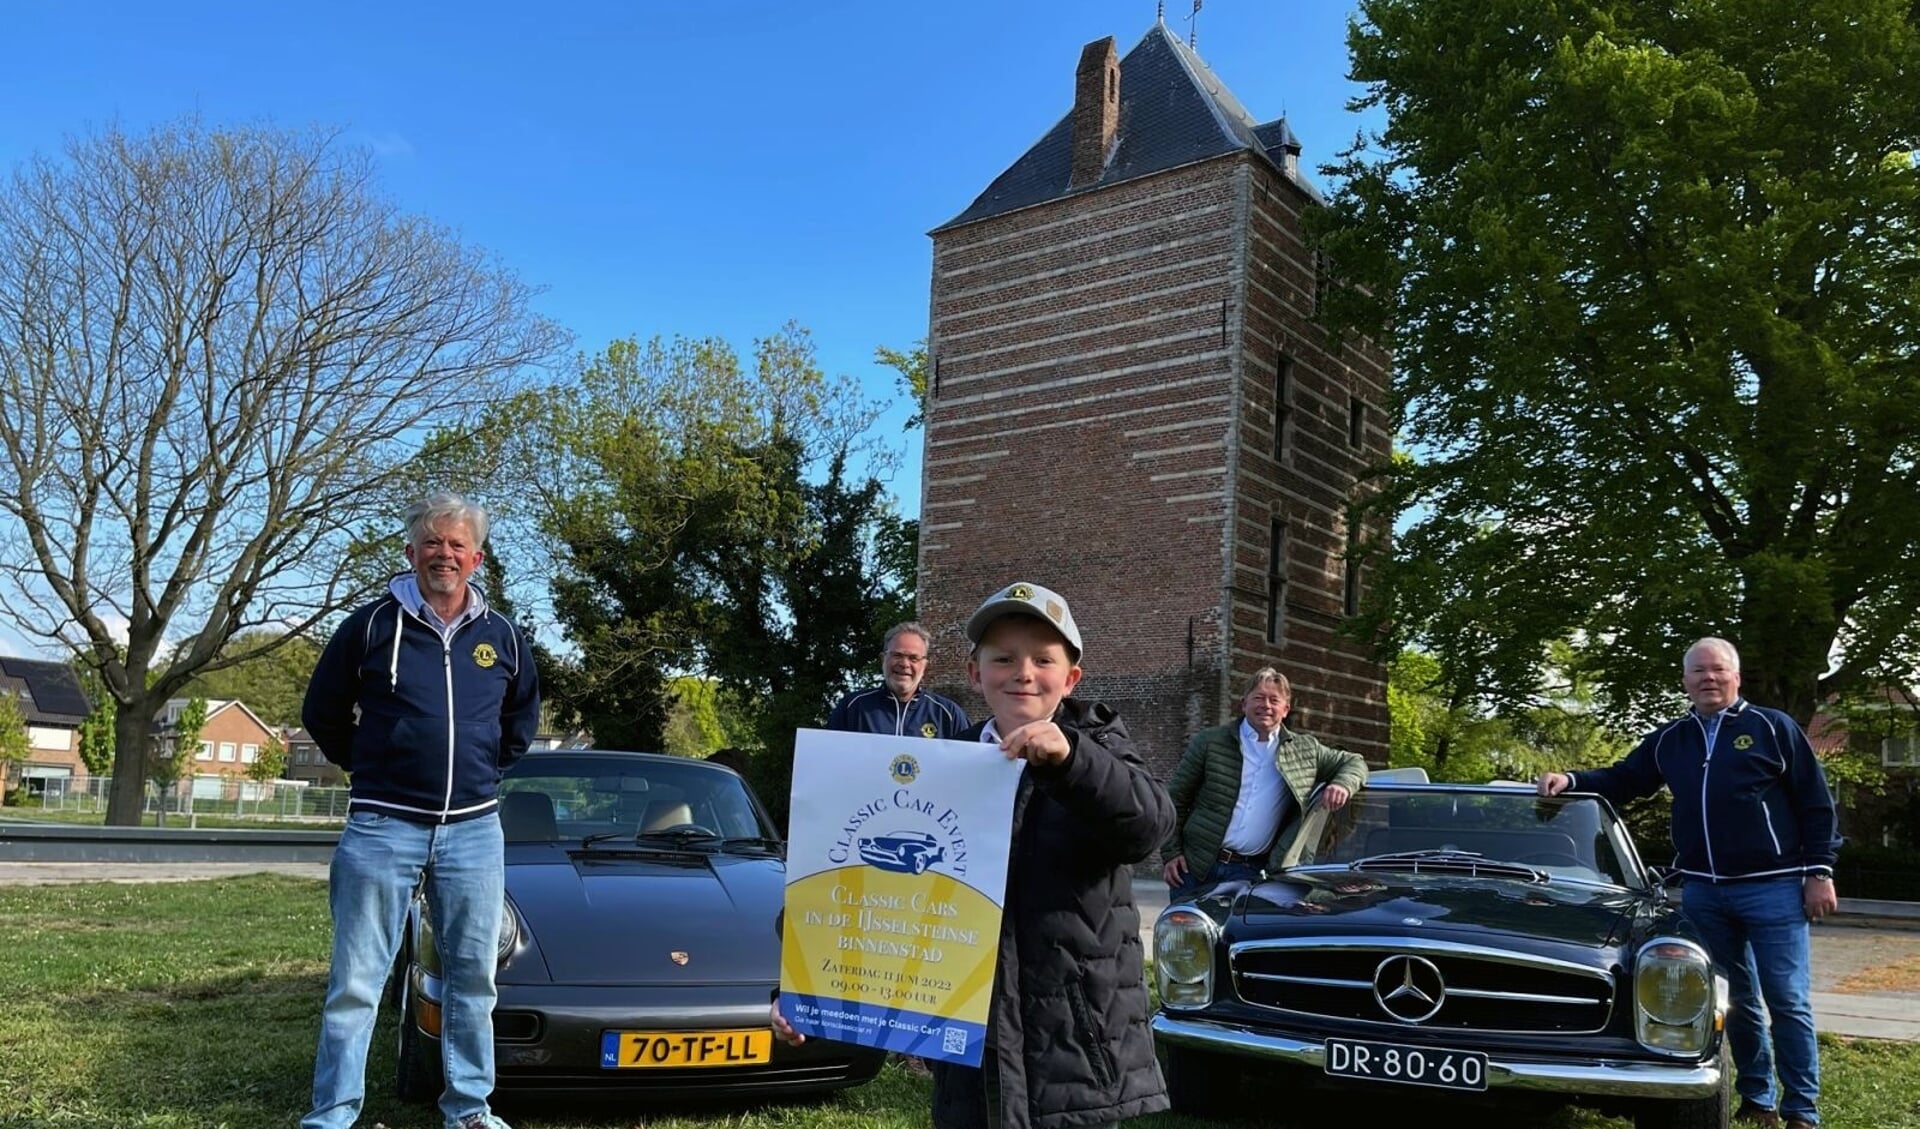 'Lionwelp' Sepp toont de poster, zijn vader met collega's twee classic cars die op 11 juni te zien zijn.